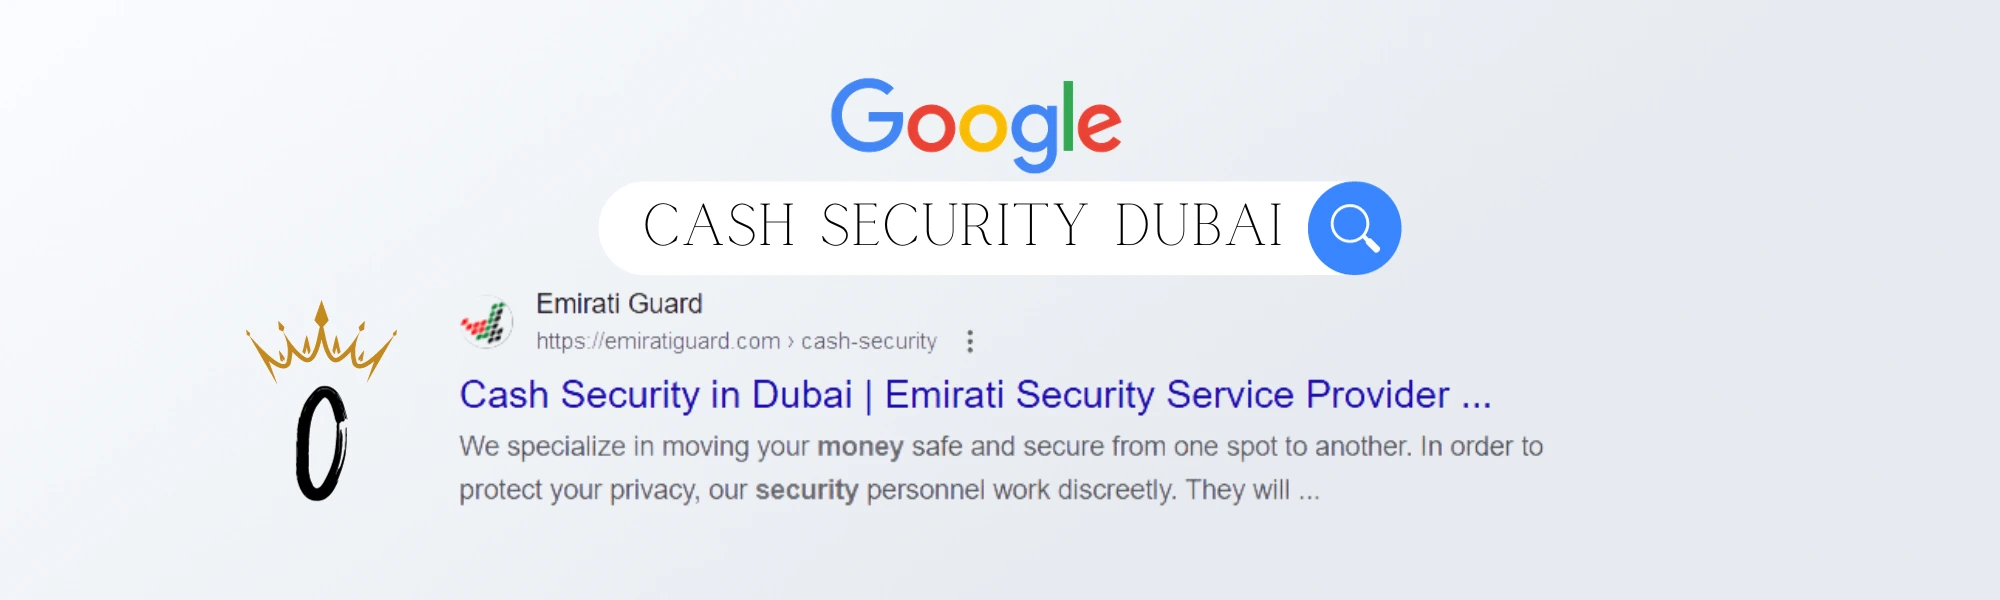 cash security dubai